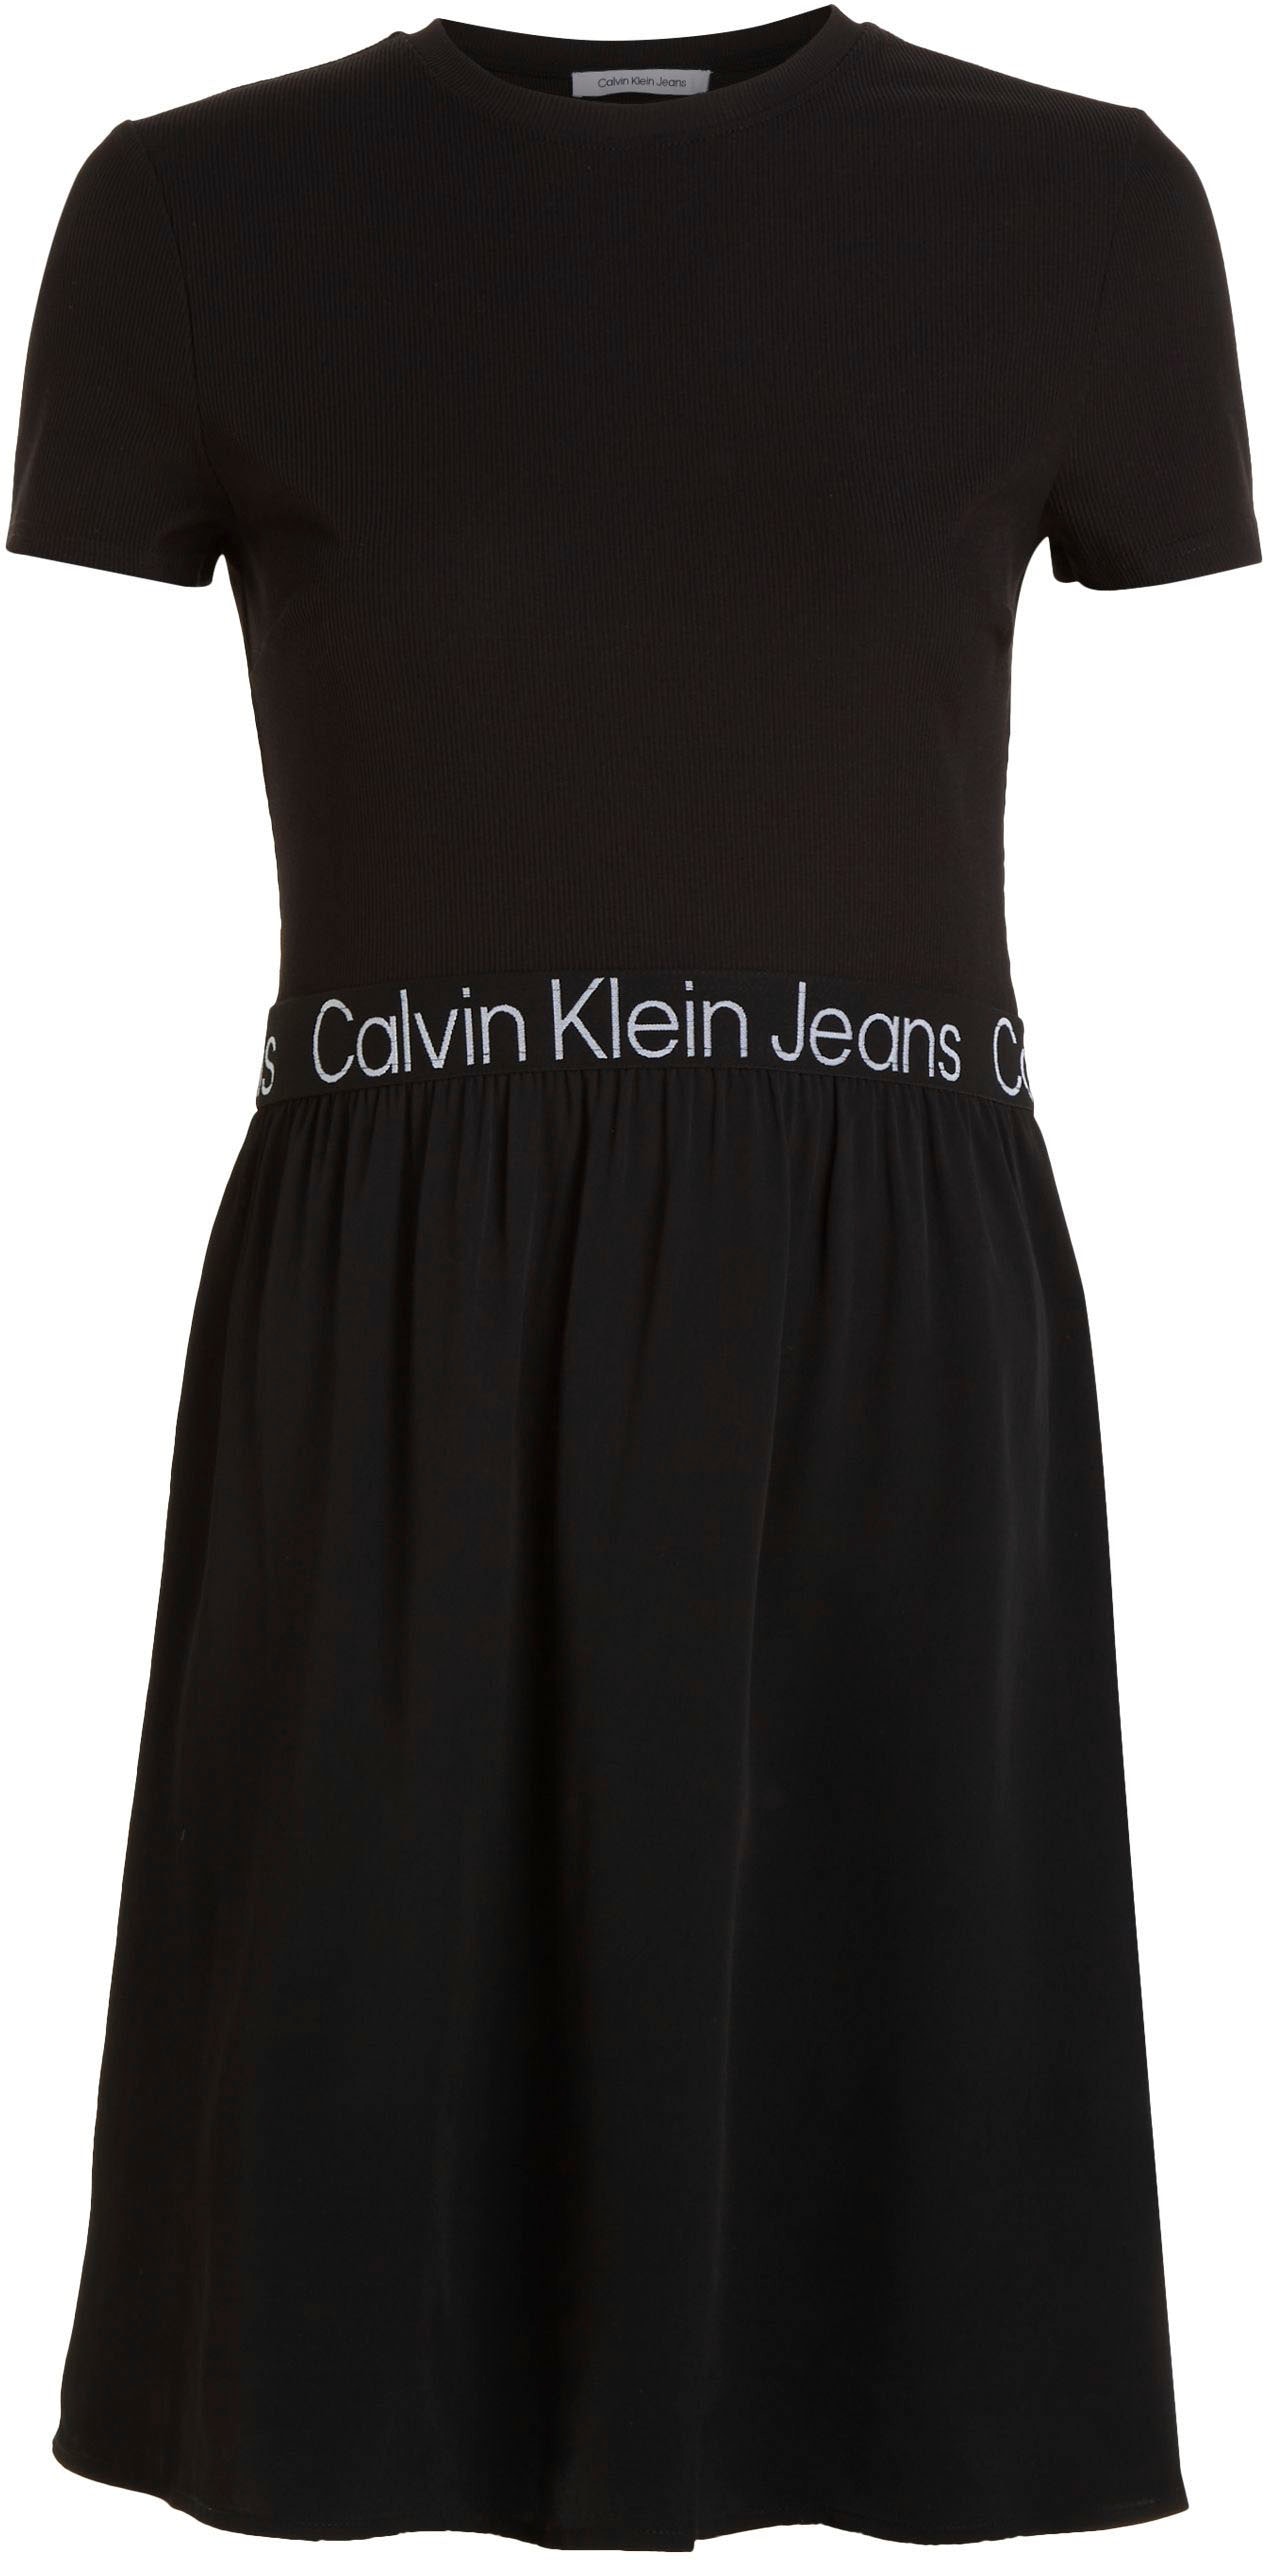 ♕ Calvin Klein versandkostenfrei Jeans im Materialmix 2-in-1-Kleid, auf